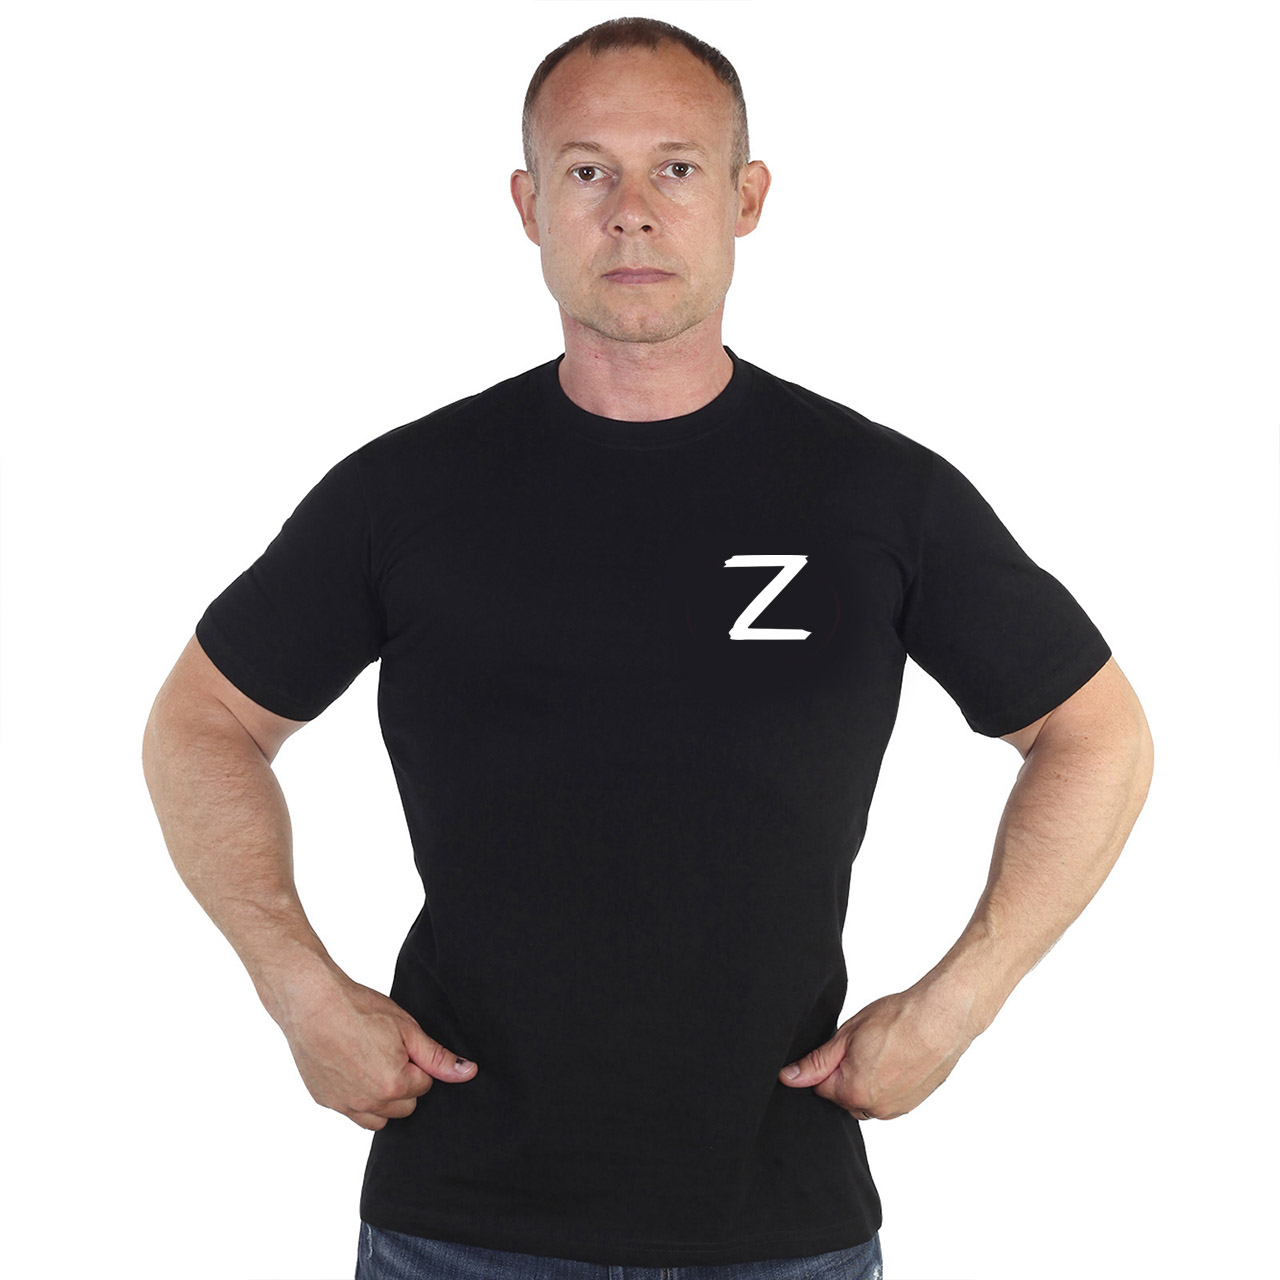 Мужская футболка Z из хлопка 